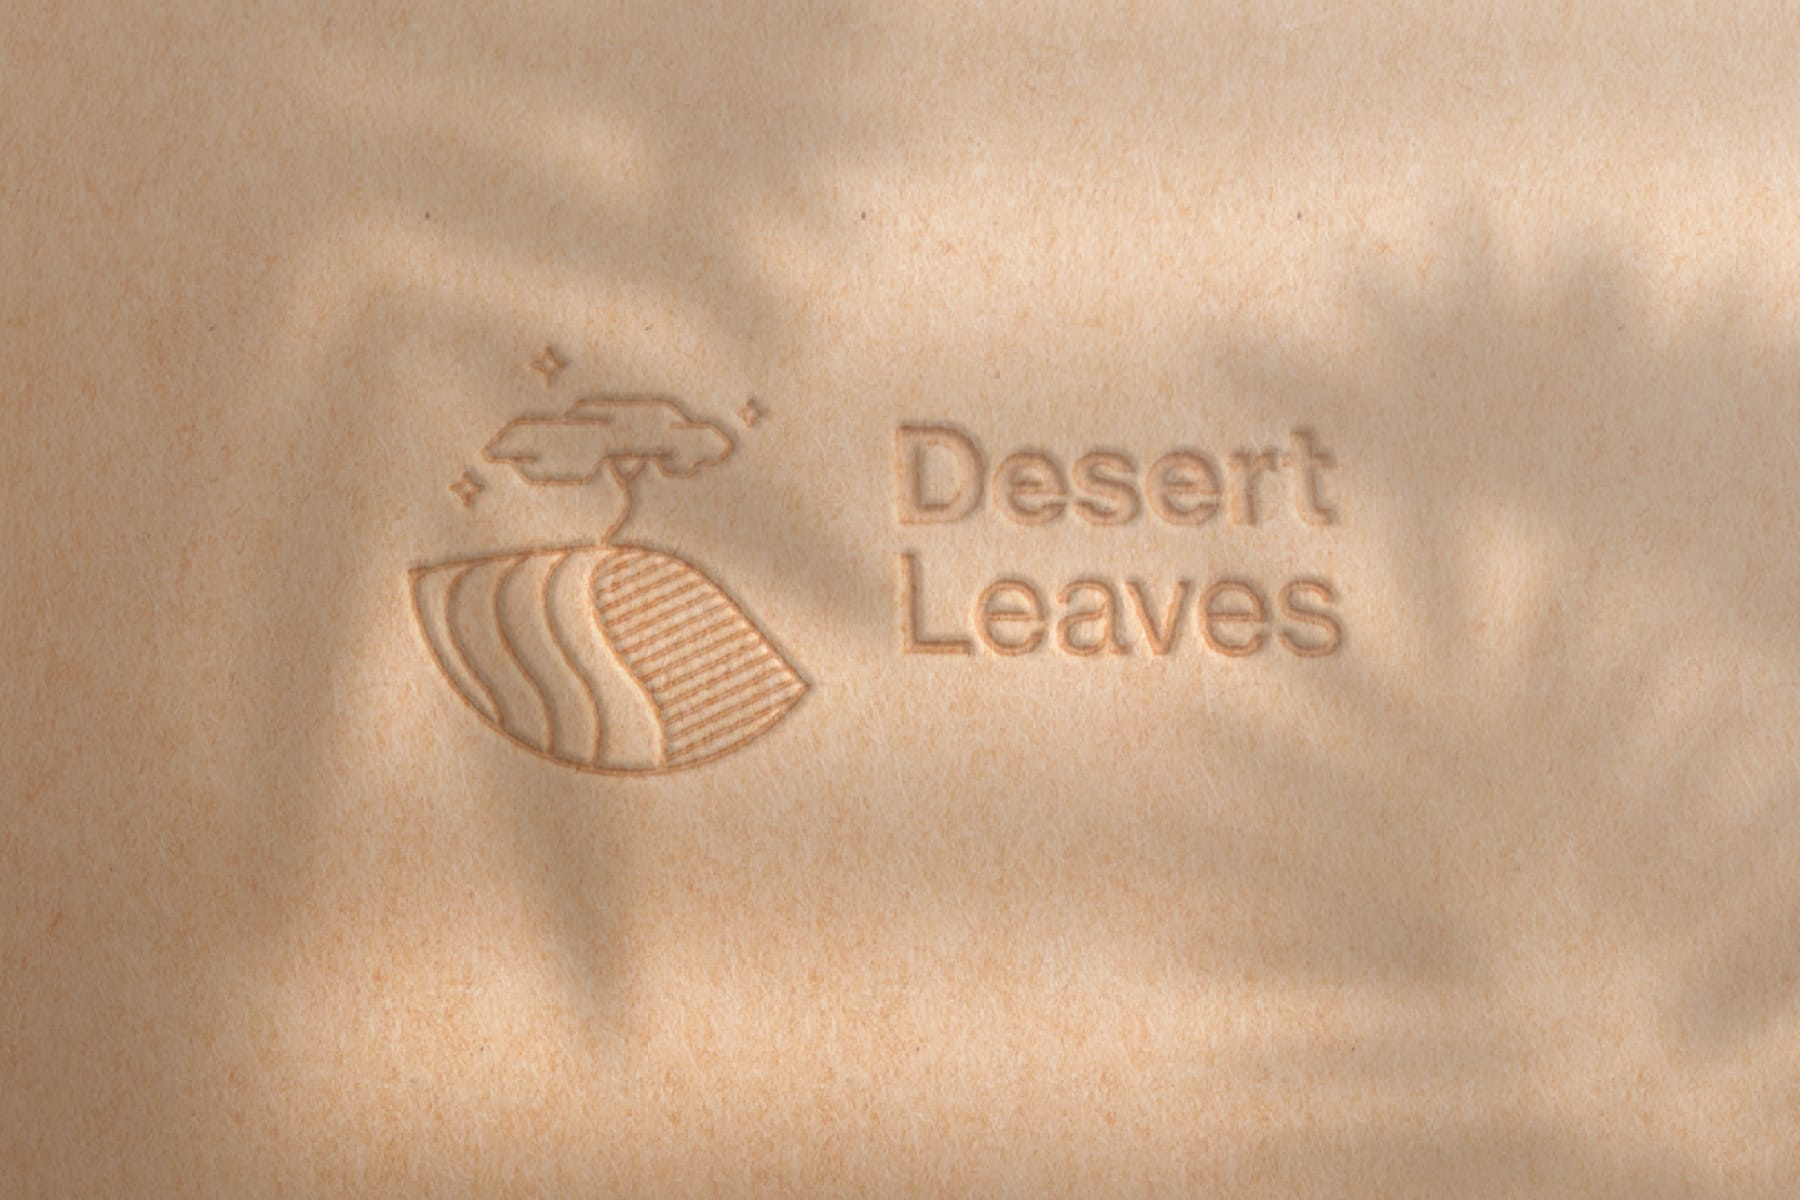 Logo Desert Leaves